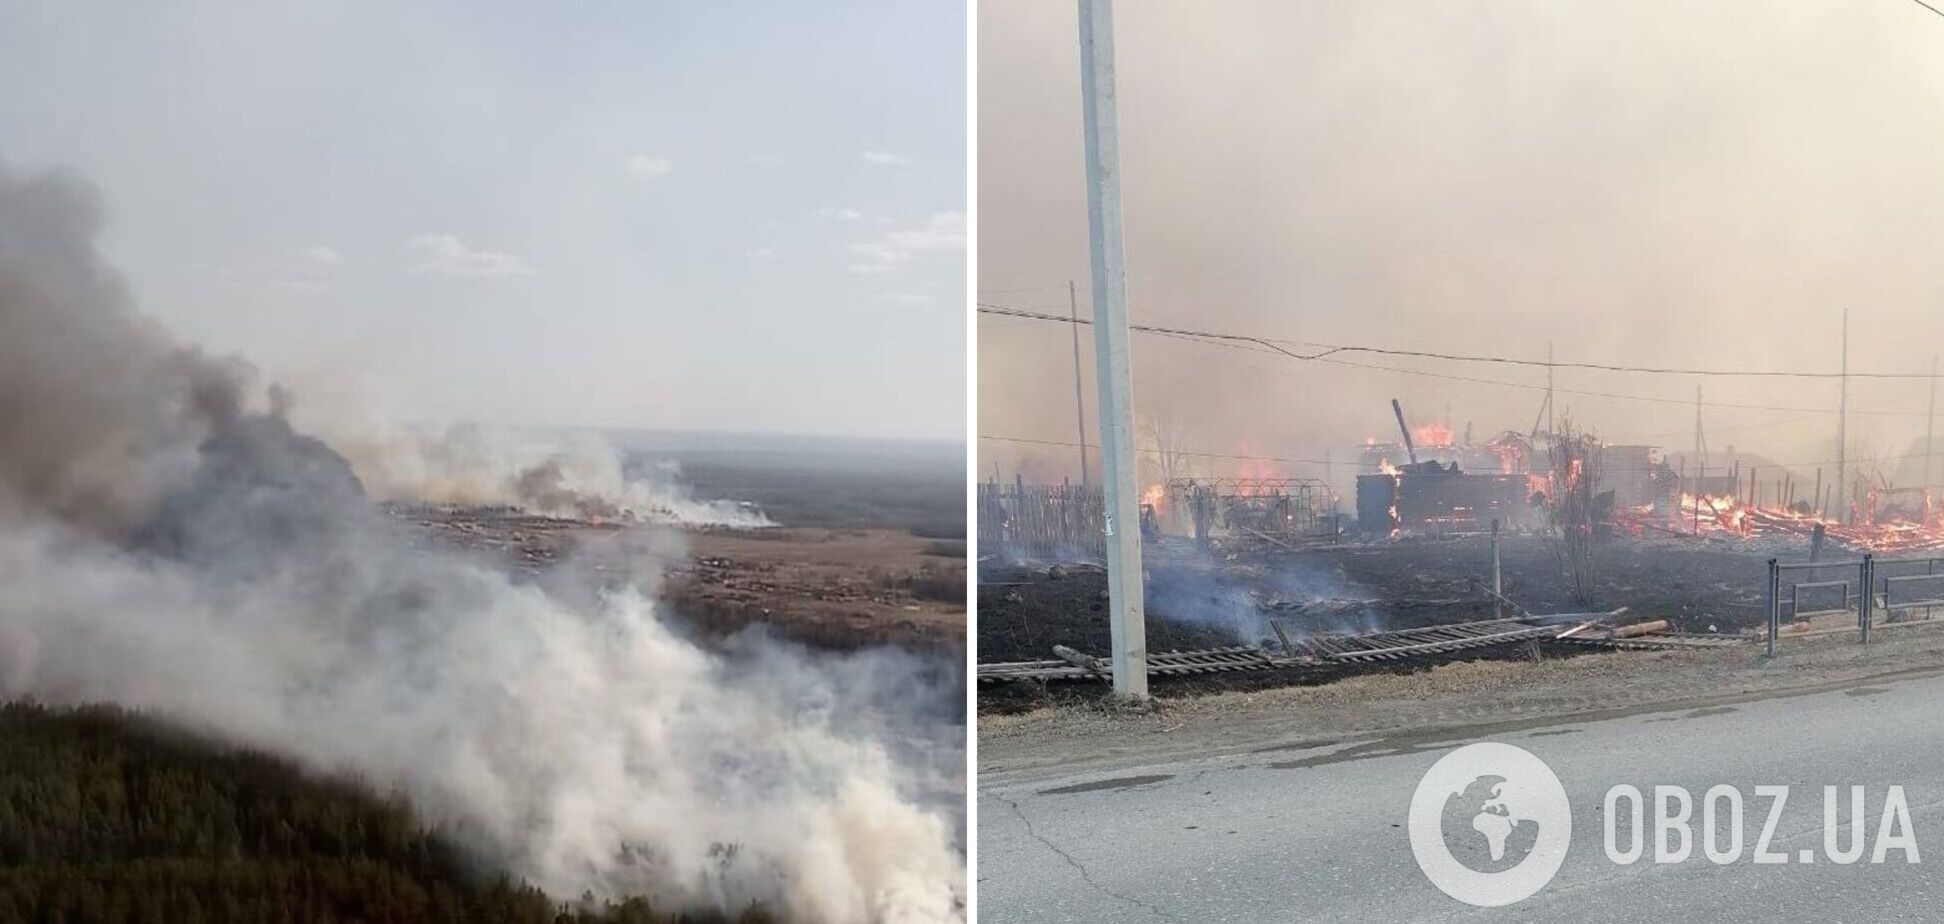 92 будівлі вже згоріло: у Свердловській області РФ палає ціле смт Сосьва. Фото і відео